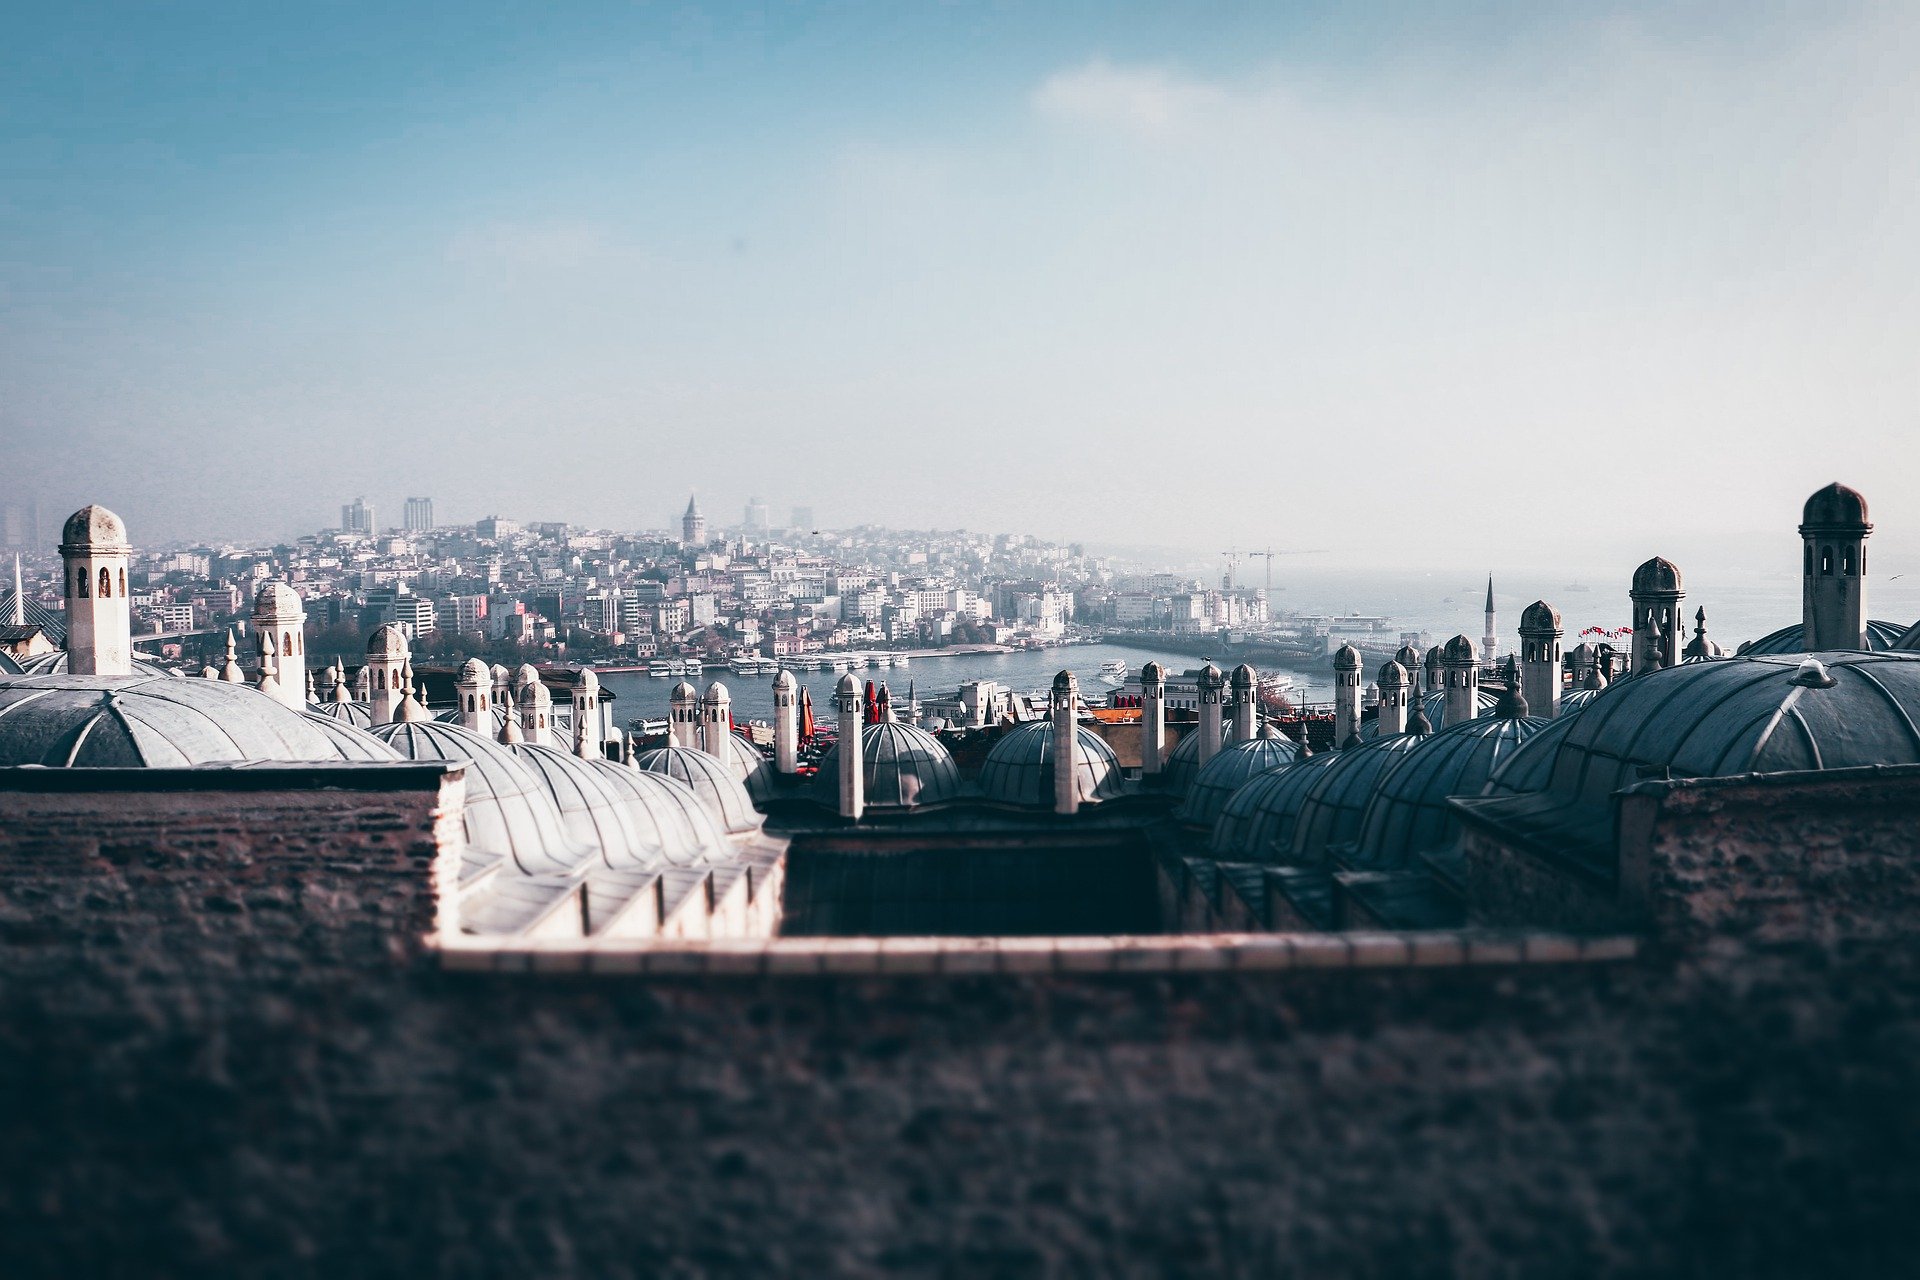 İstanbul'daki tarihi yapılar büyük depreme hazır mı?